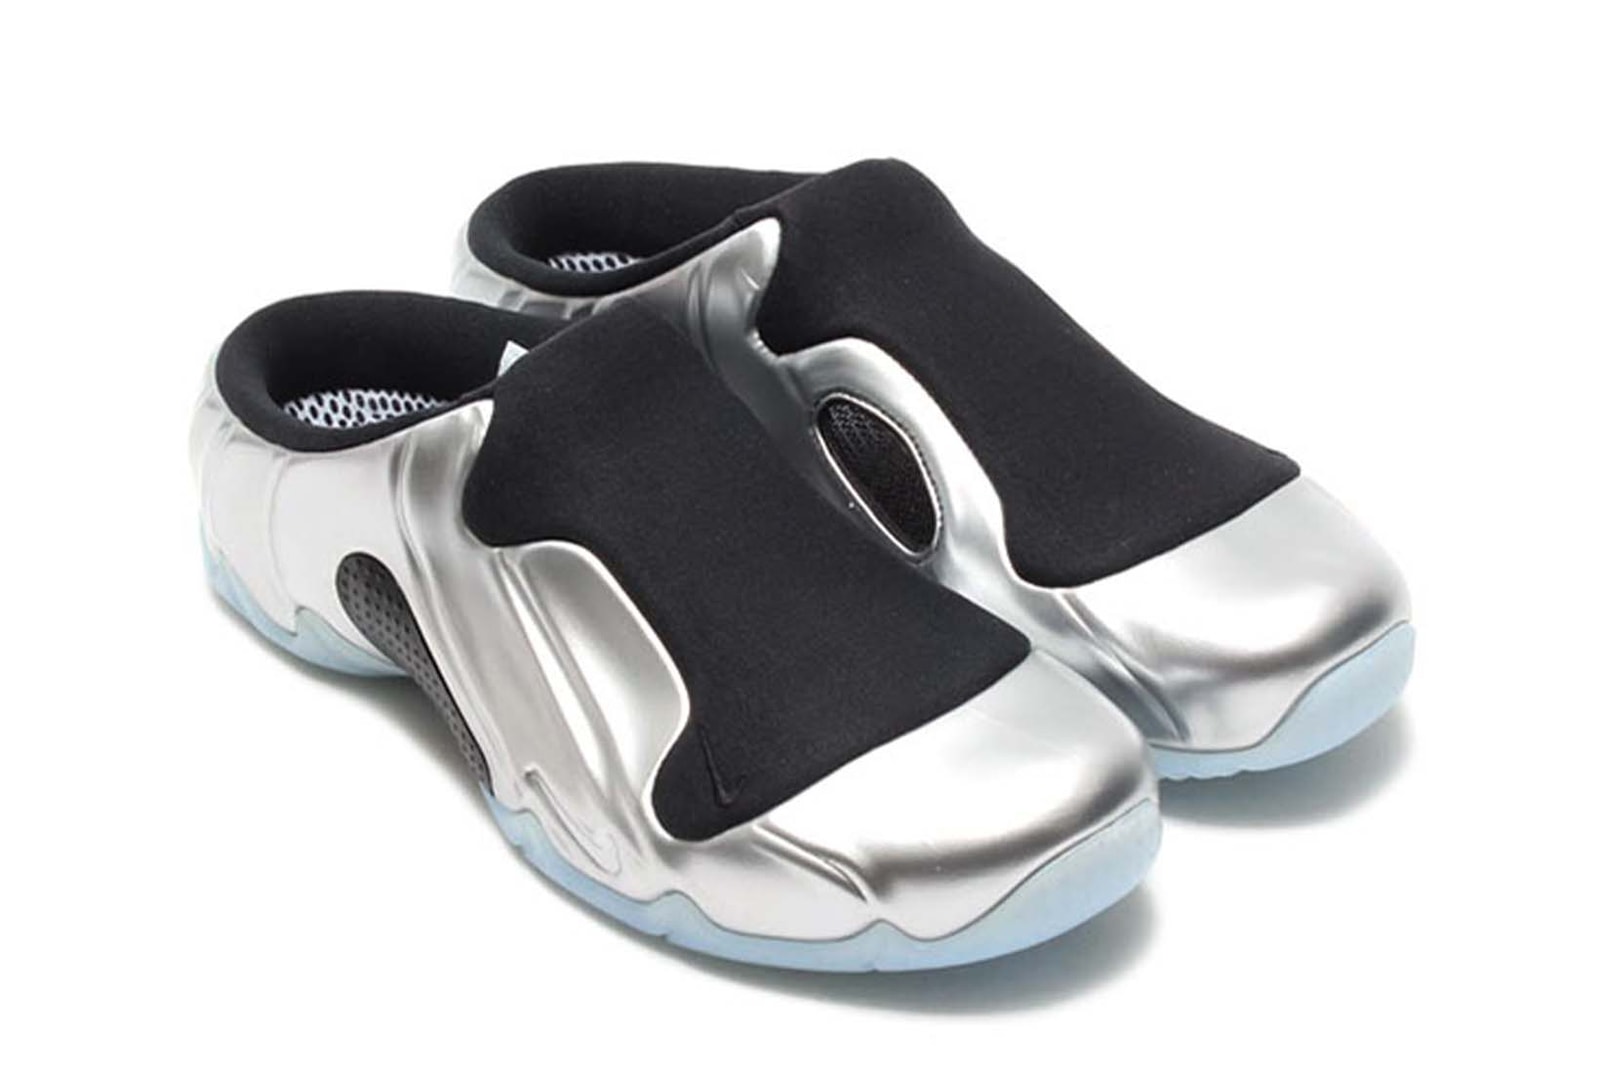 Vintage Sneakers Y2K Aughts Fashion Nike Air Jordan adidas Vashtie Teyana Taylor